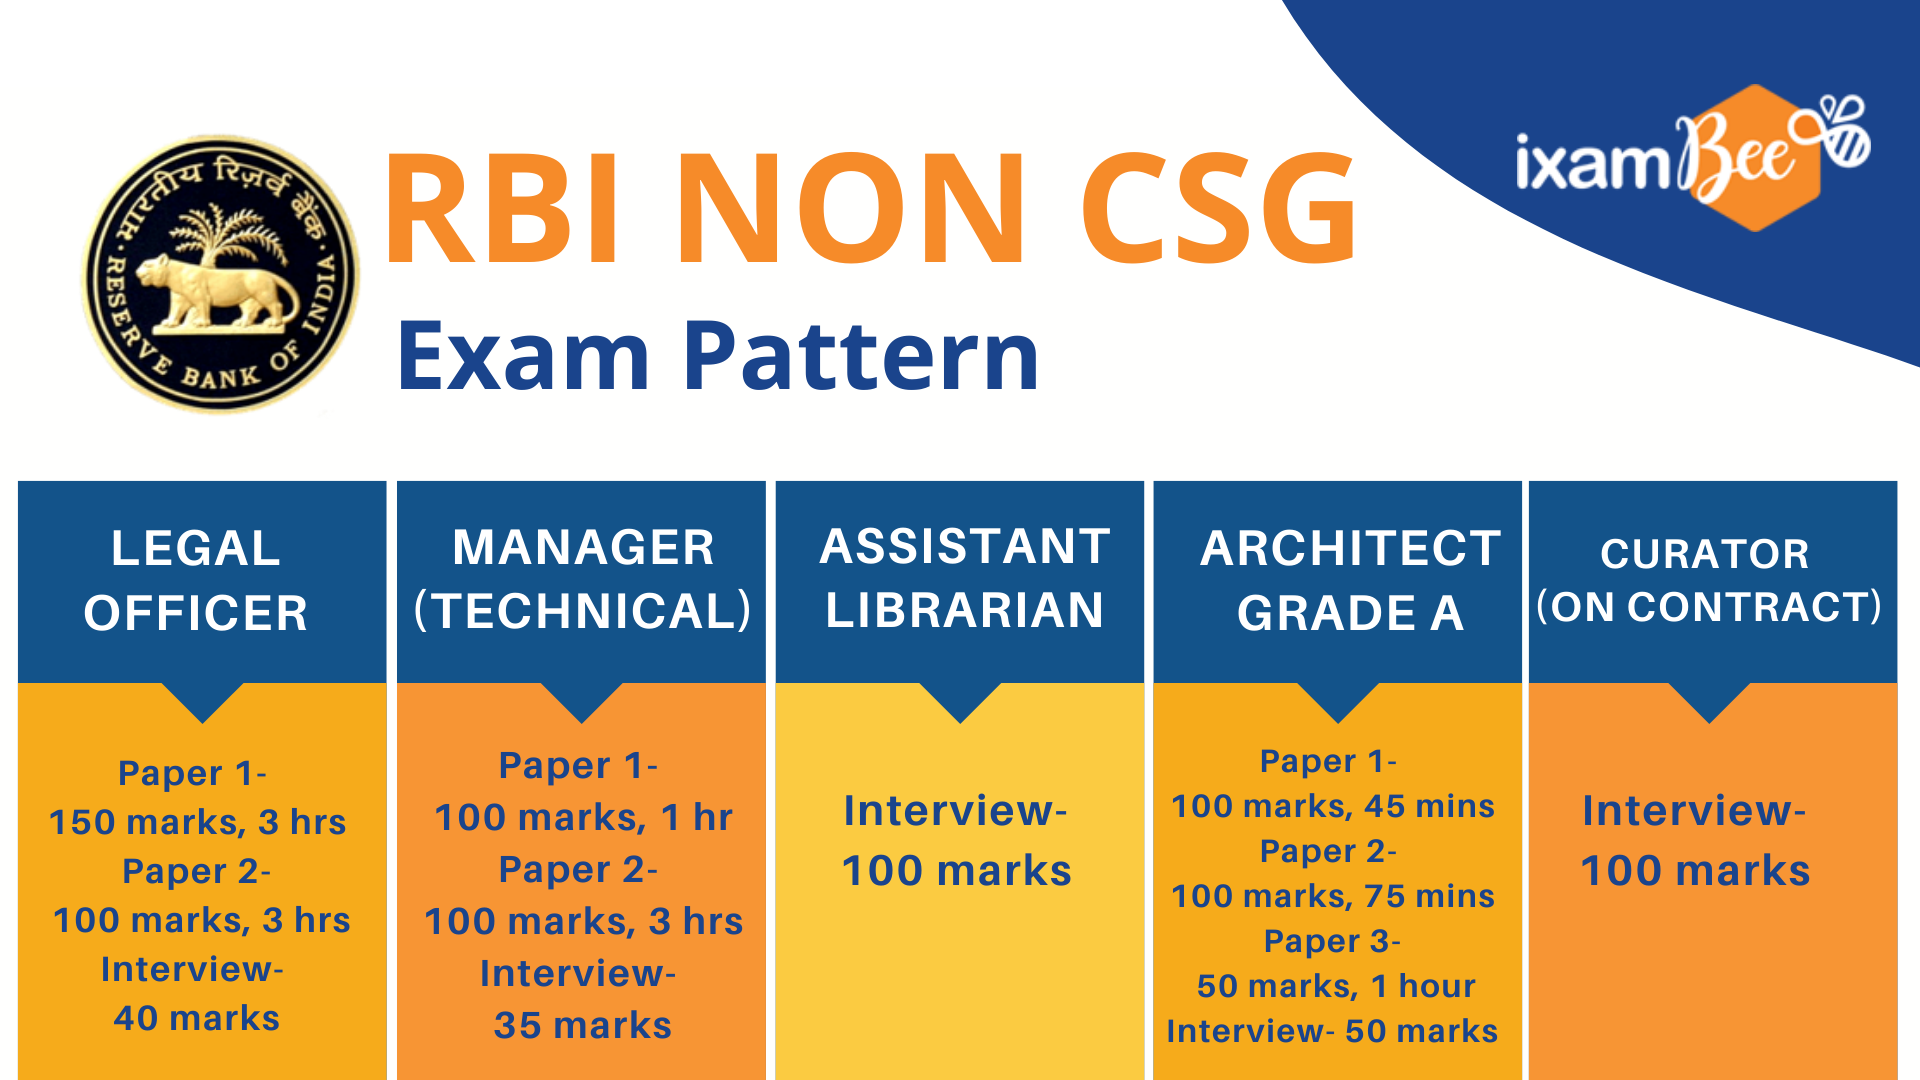 RBI Non CSG exam pattern